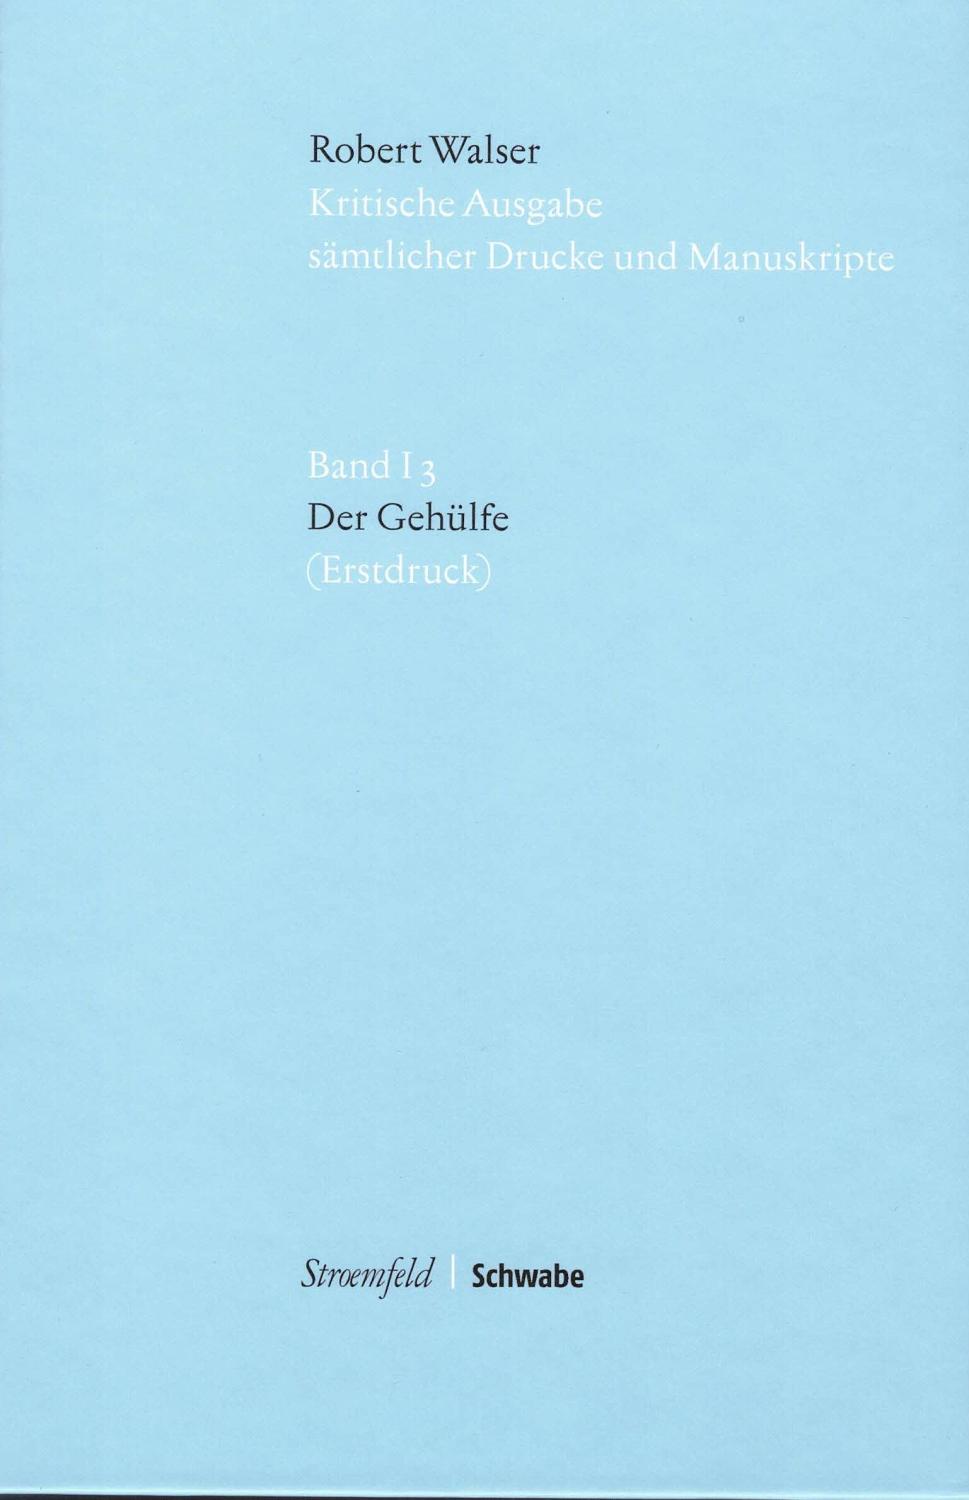 Kritische Ausgabe sämtlicher Drucke und Manuskripte. Band I 3: Der Gehülfe. Erstdruck. Herausgegeben von Wolfram Groddeck und Barbara von Reibnitz. - Walser, Robert